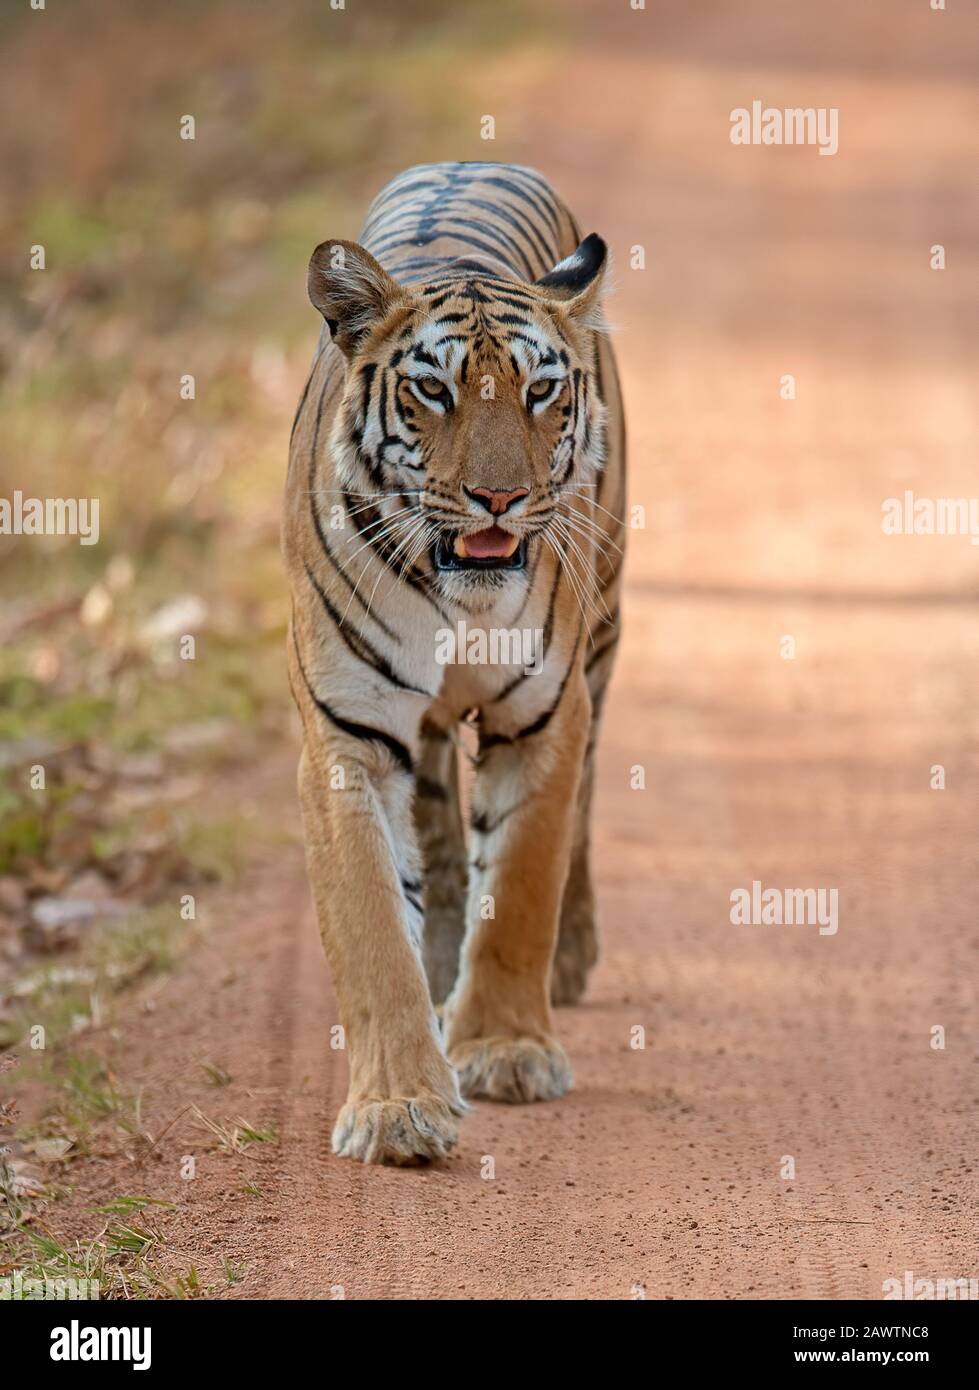 Tiger, Panthera tigris marchant sur la route vers caméra, Inde Banque D'Images